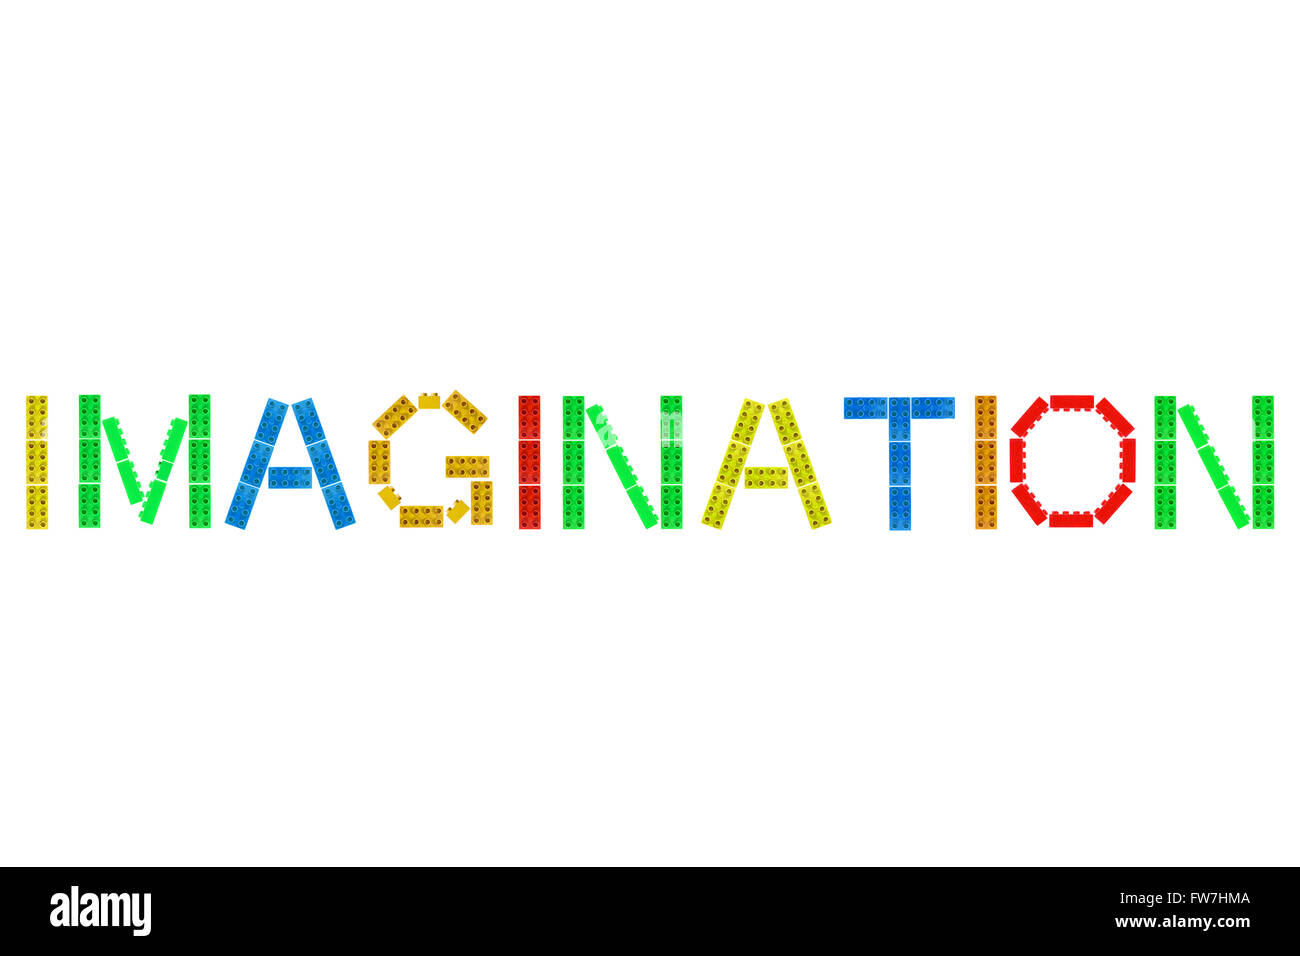 Das Wort Fantasie aus Lego-Steinen auf einem weißen Hintergrund fotografiert hergestellt. Stockfoto